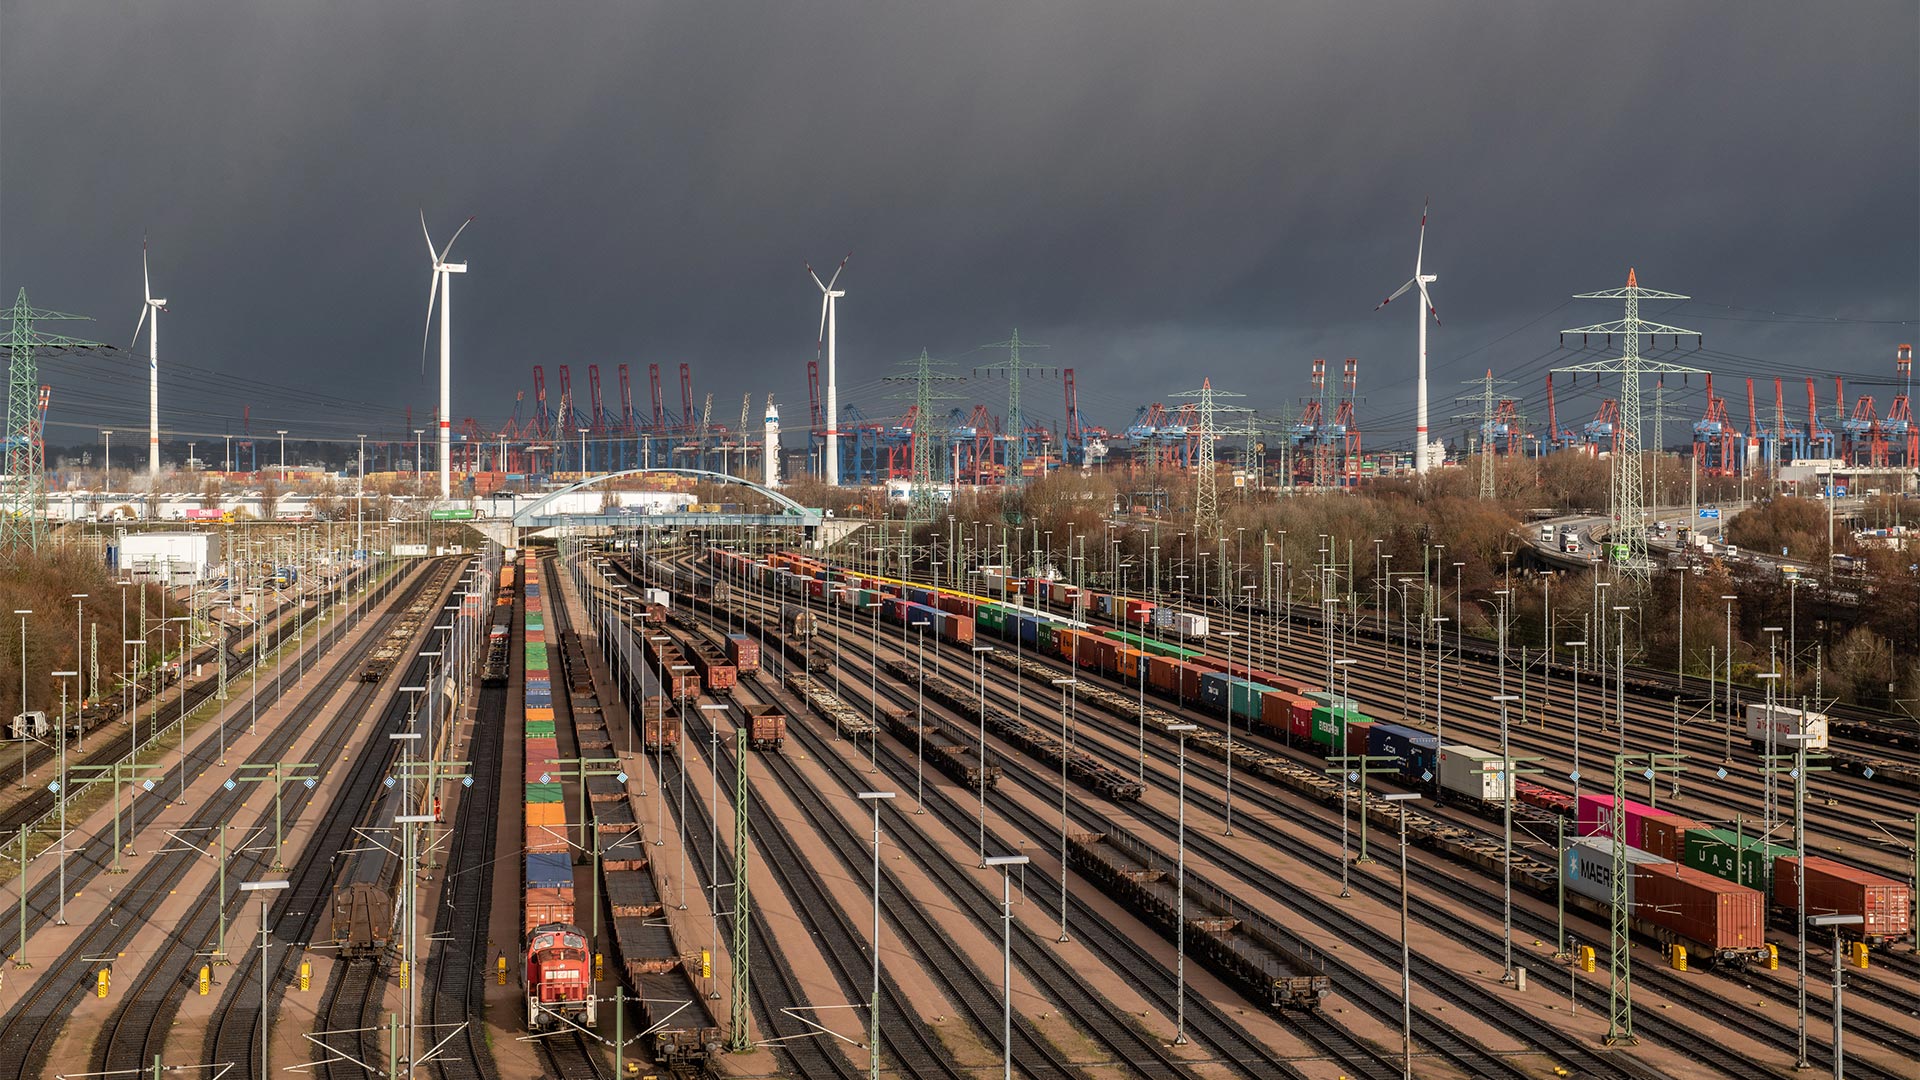 Gleisanlagen beim Hamburger Hafen | picture alliance/dpa